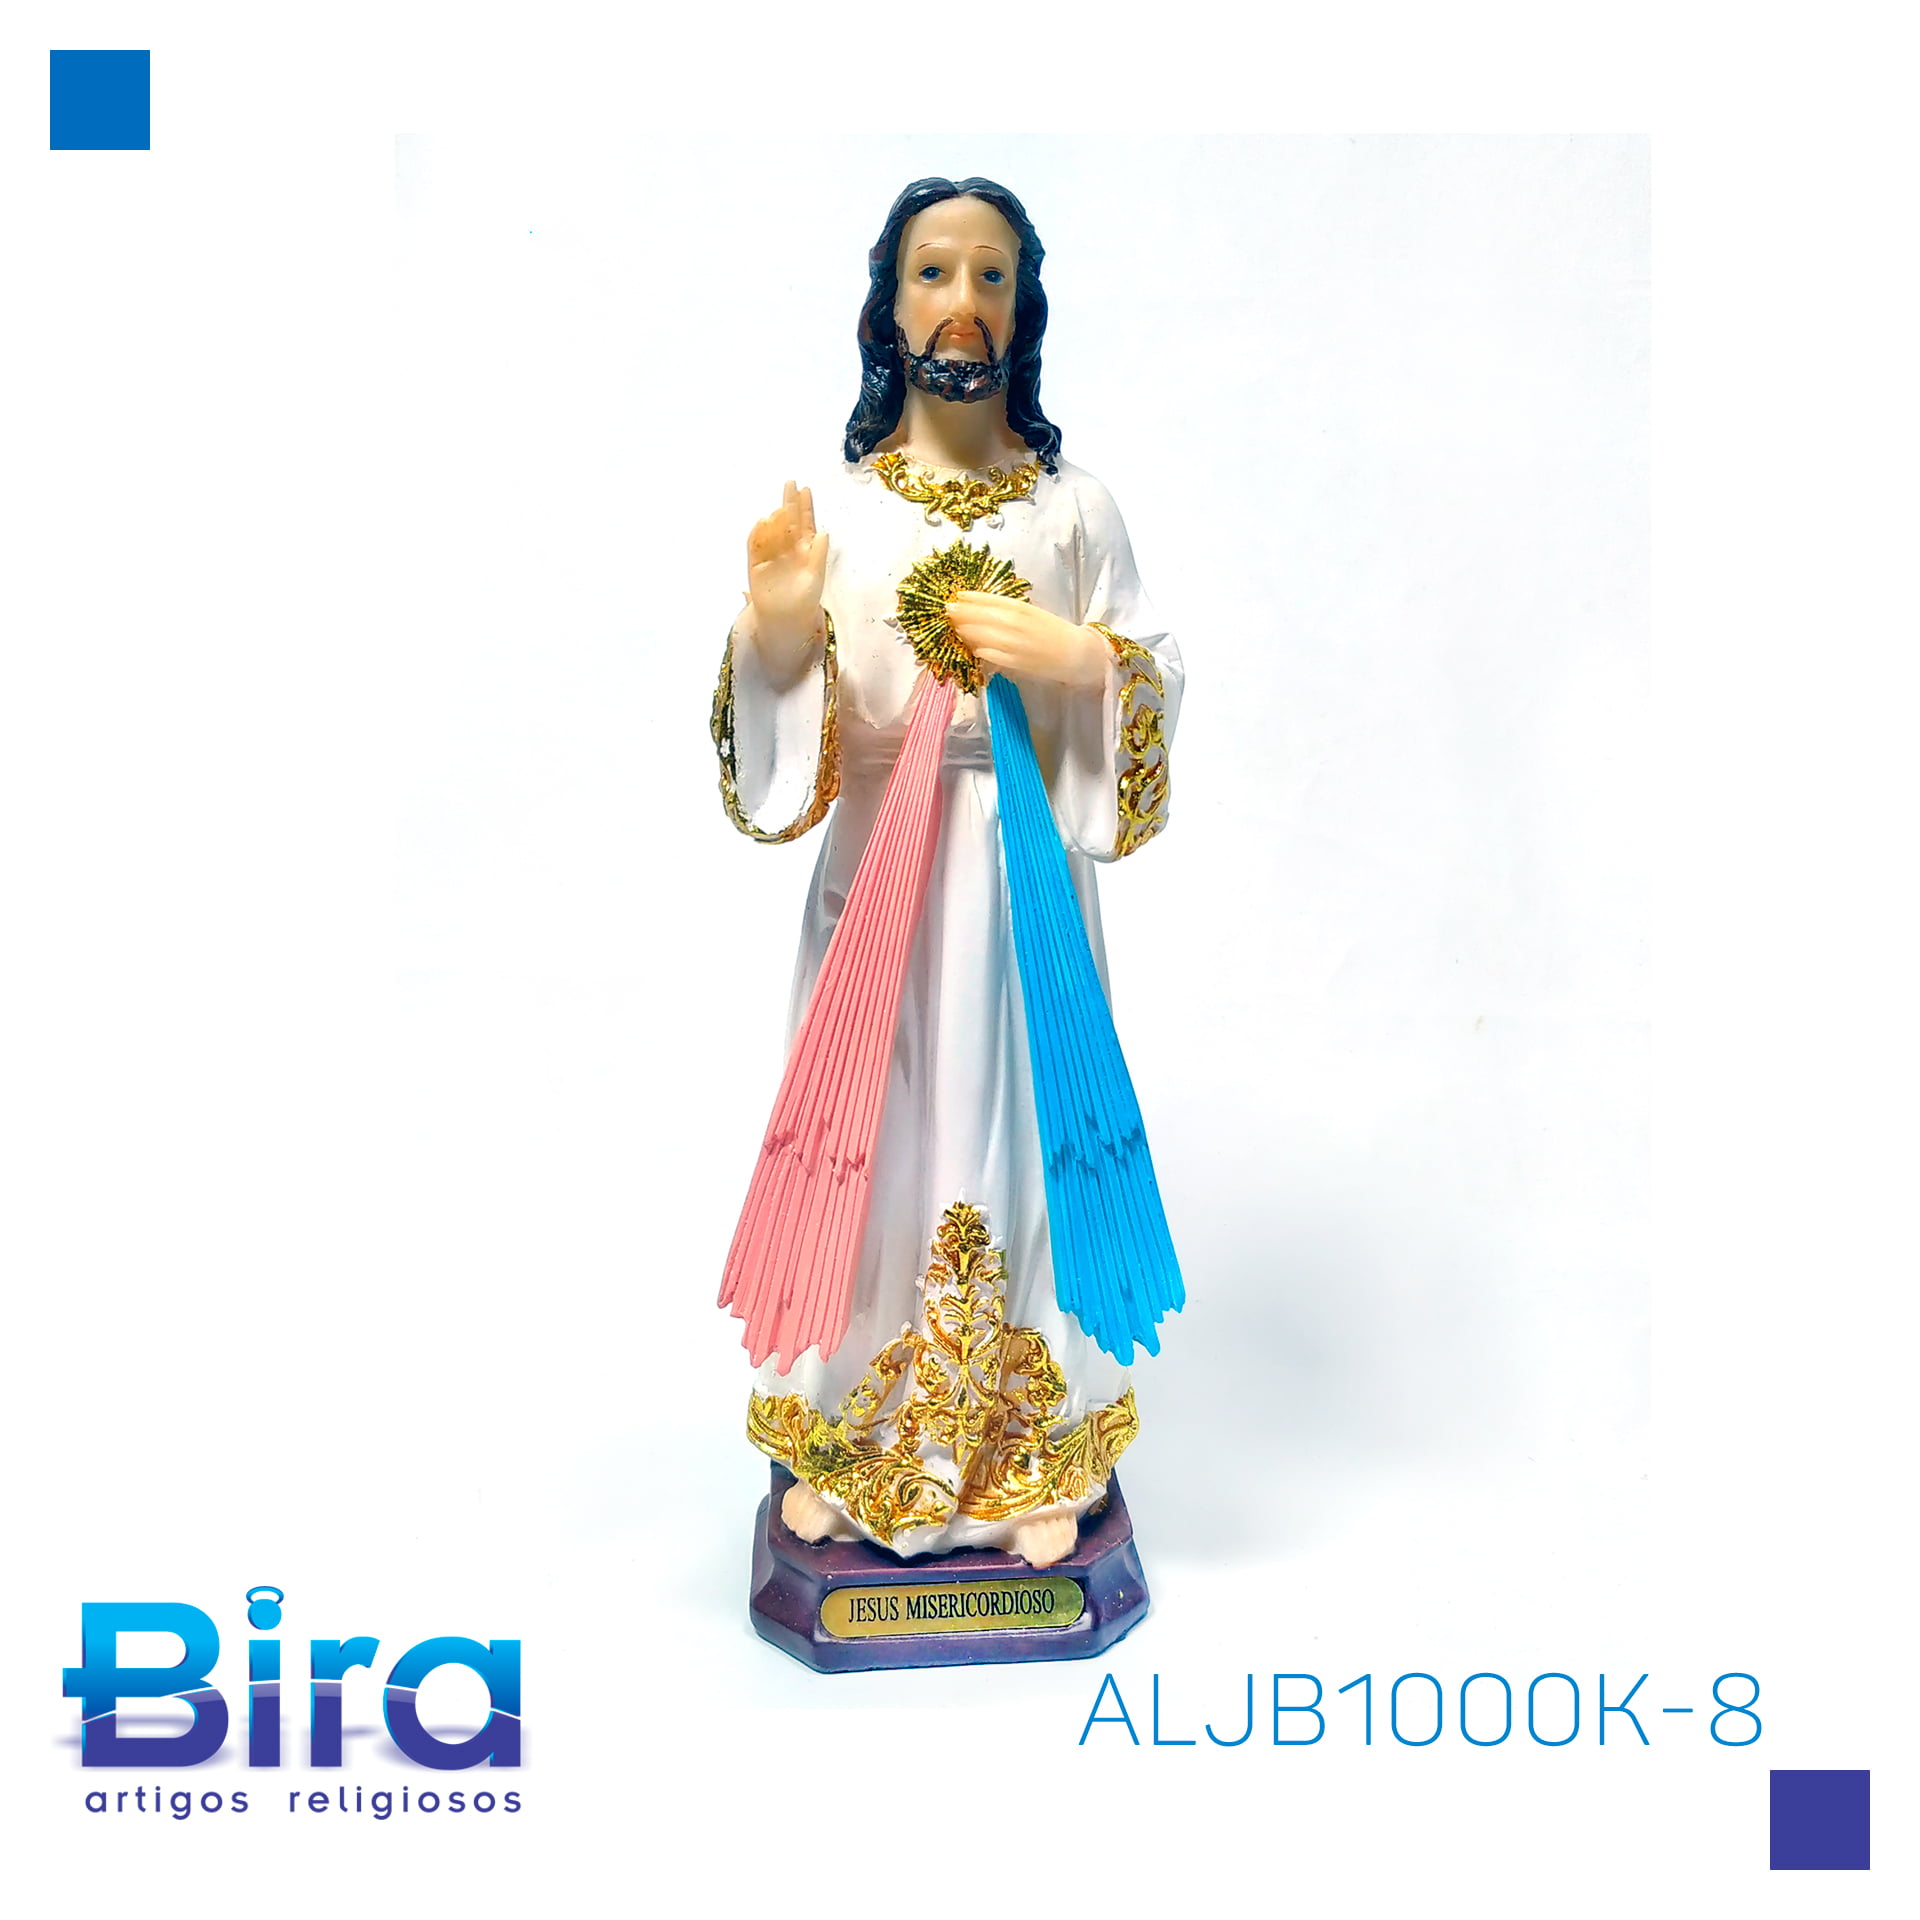 Bira Artigos Religiosos - JESUS MISERICORDIOSO DE RESINA DE 20 CM - CÓD ALJB1000K-8